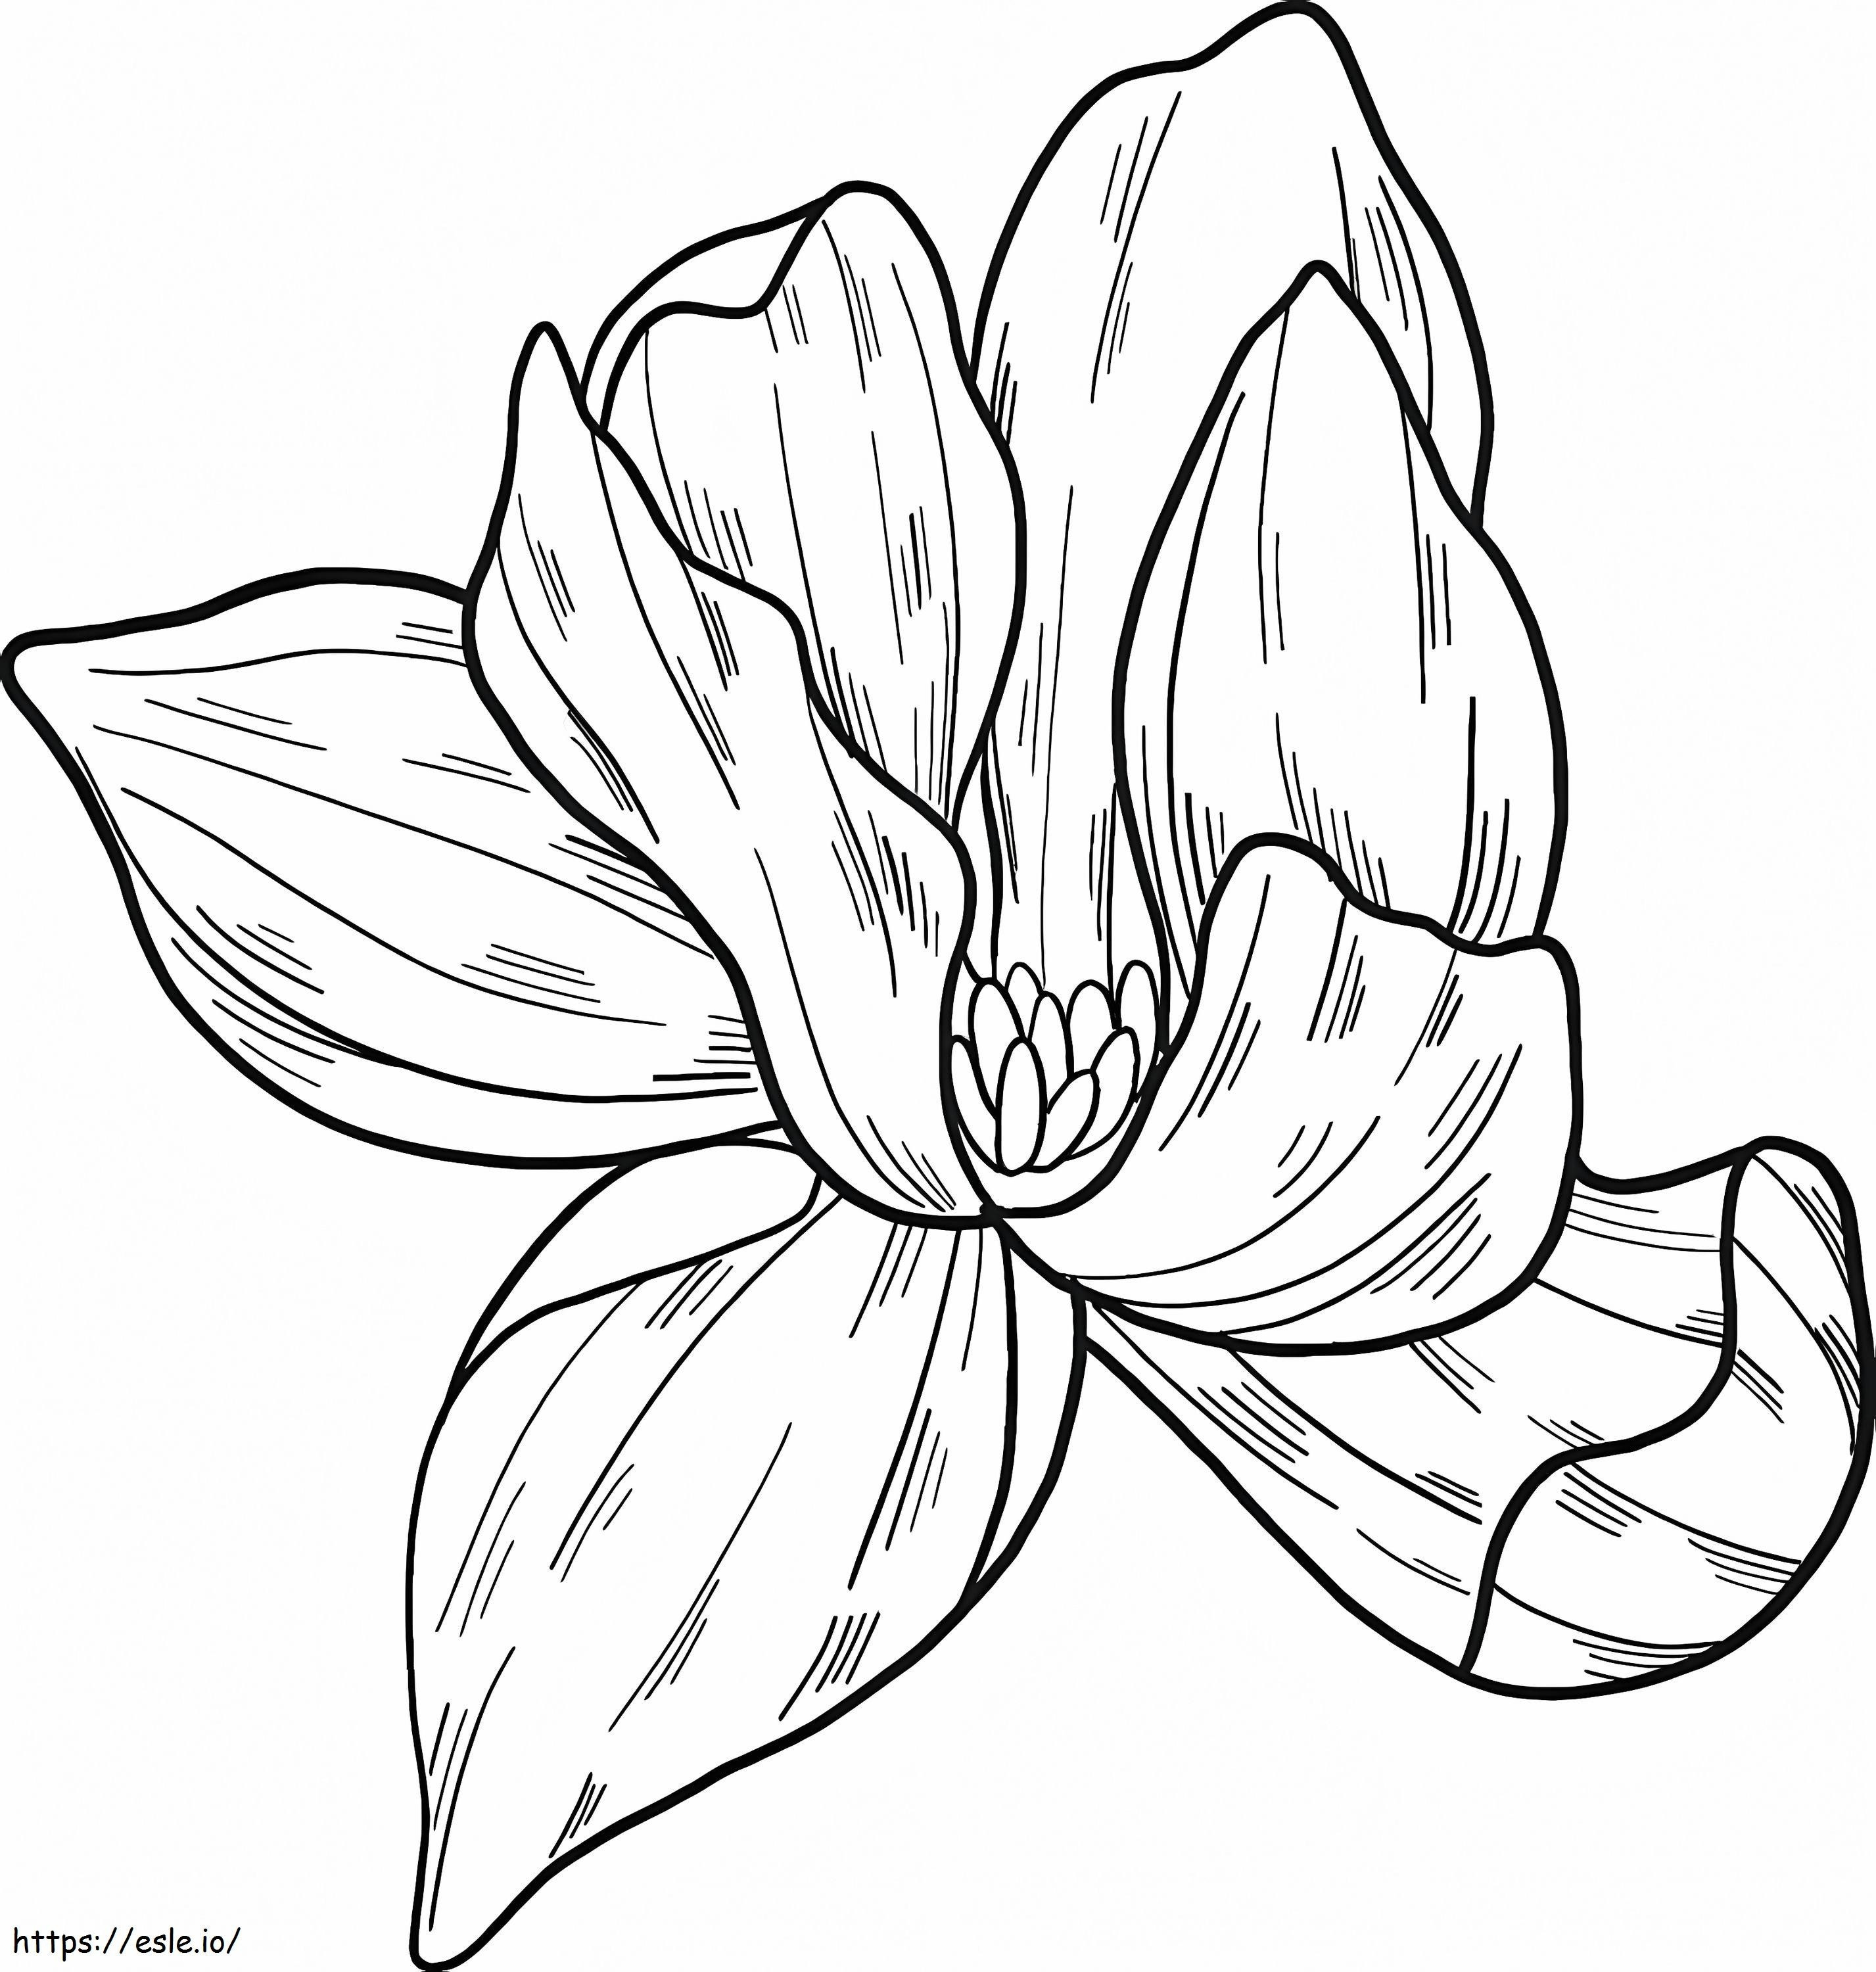 Flor de magnolia 4 para colorear